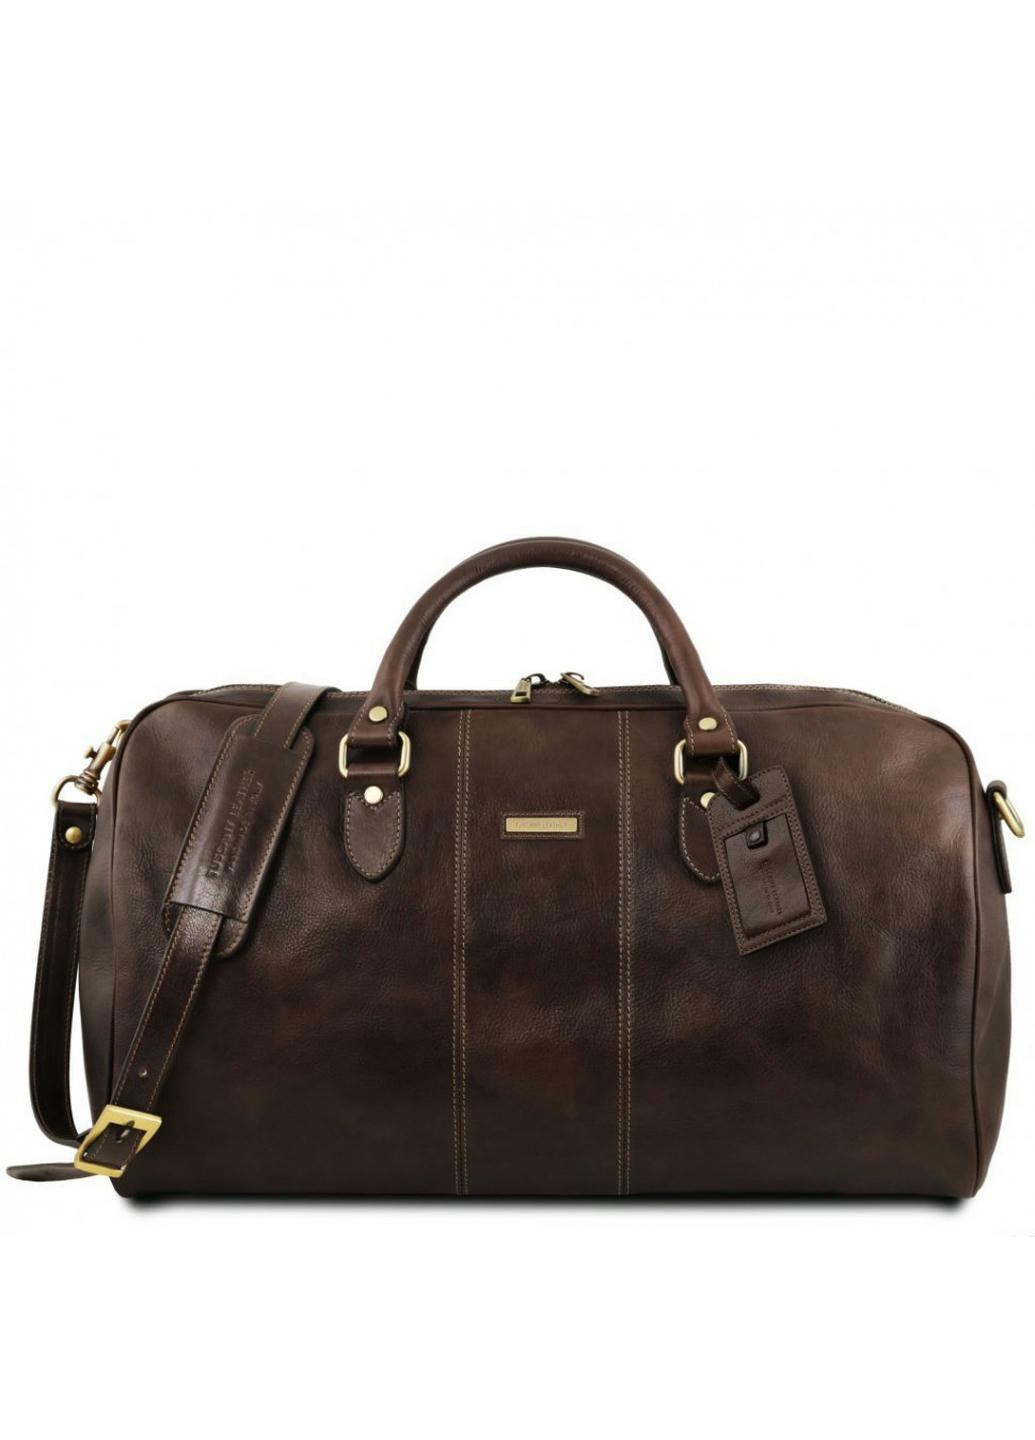 Lisbona Дорожная кожаная сумка-даффл - Большой размер Tuscany TL141657 (Темно-коричневый) Tuscany Leather (257657124)